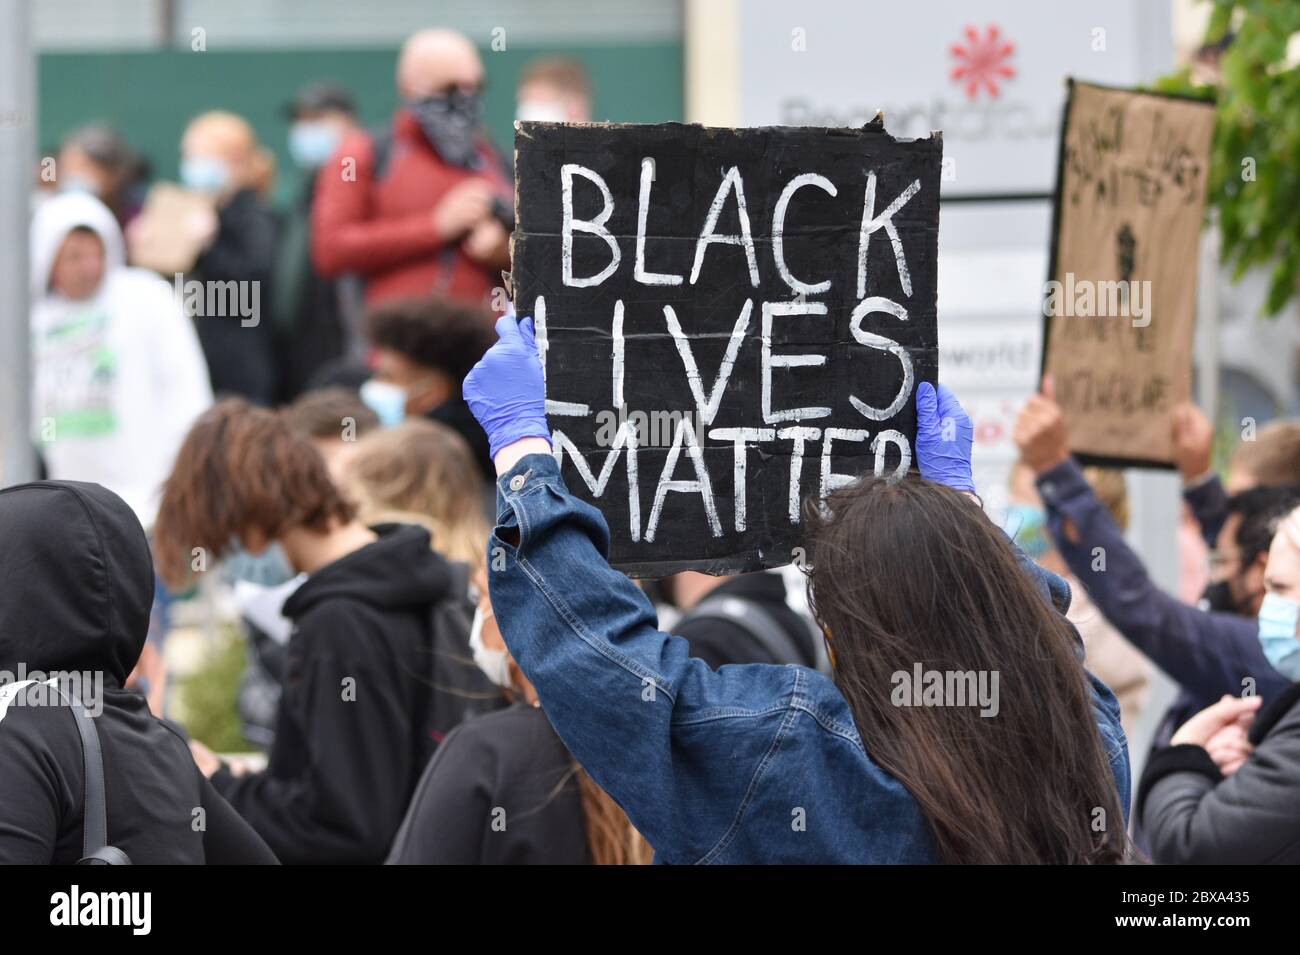 Une jeune femme blanche manifestant lors d'un rassemblement de protestation britannique contre le racisme au Royaume-Uni, portant un panneau indiquant « Black Lives Matter ». Juin 6 2020. Banque D'Images